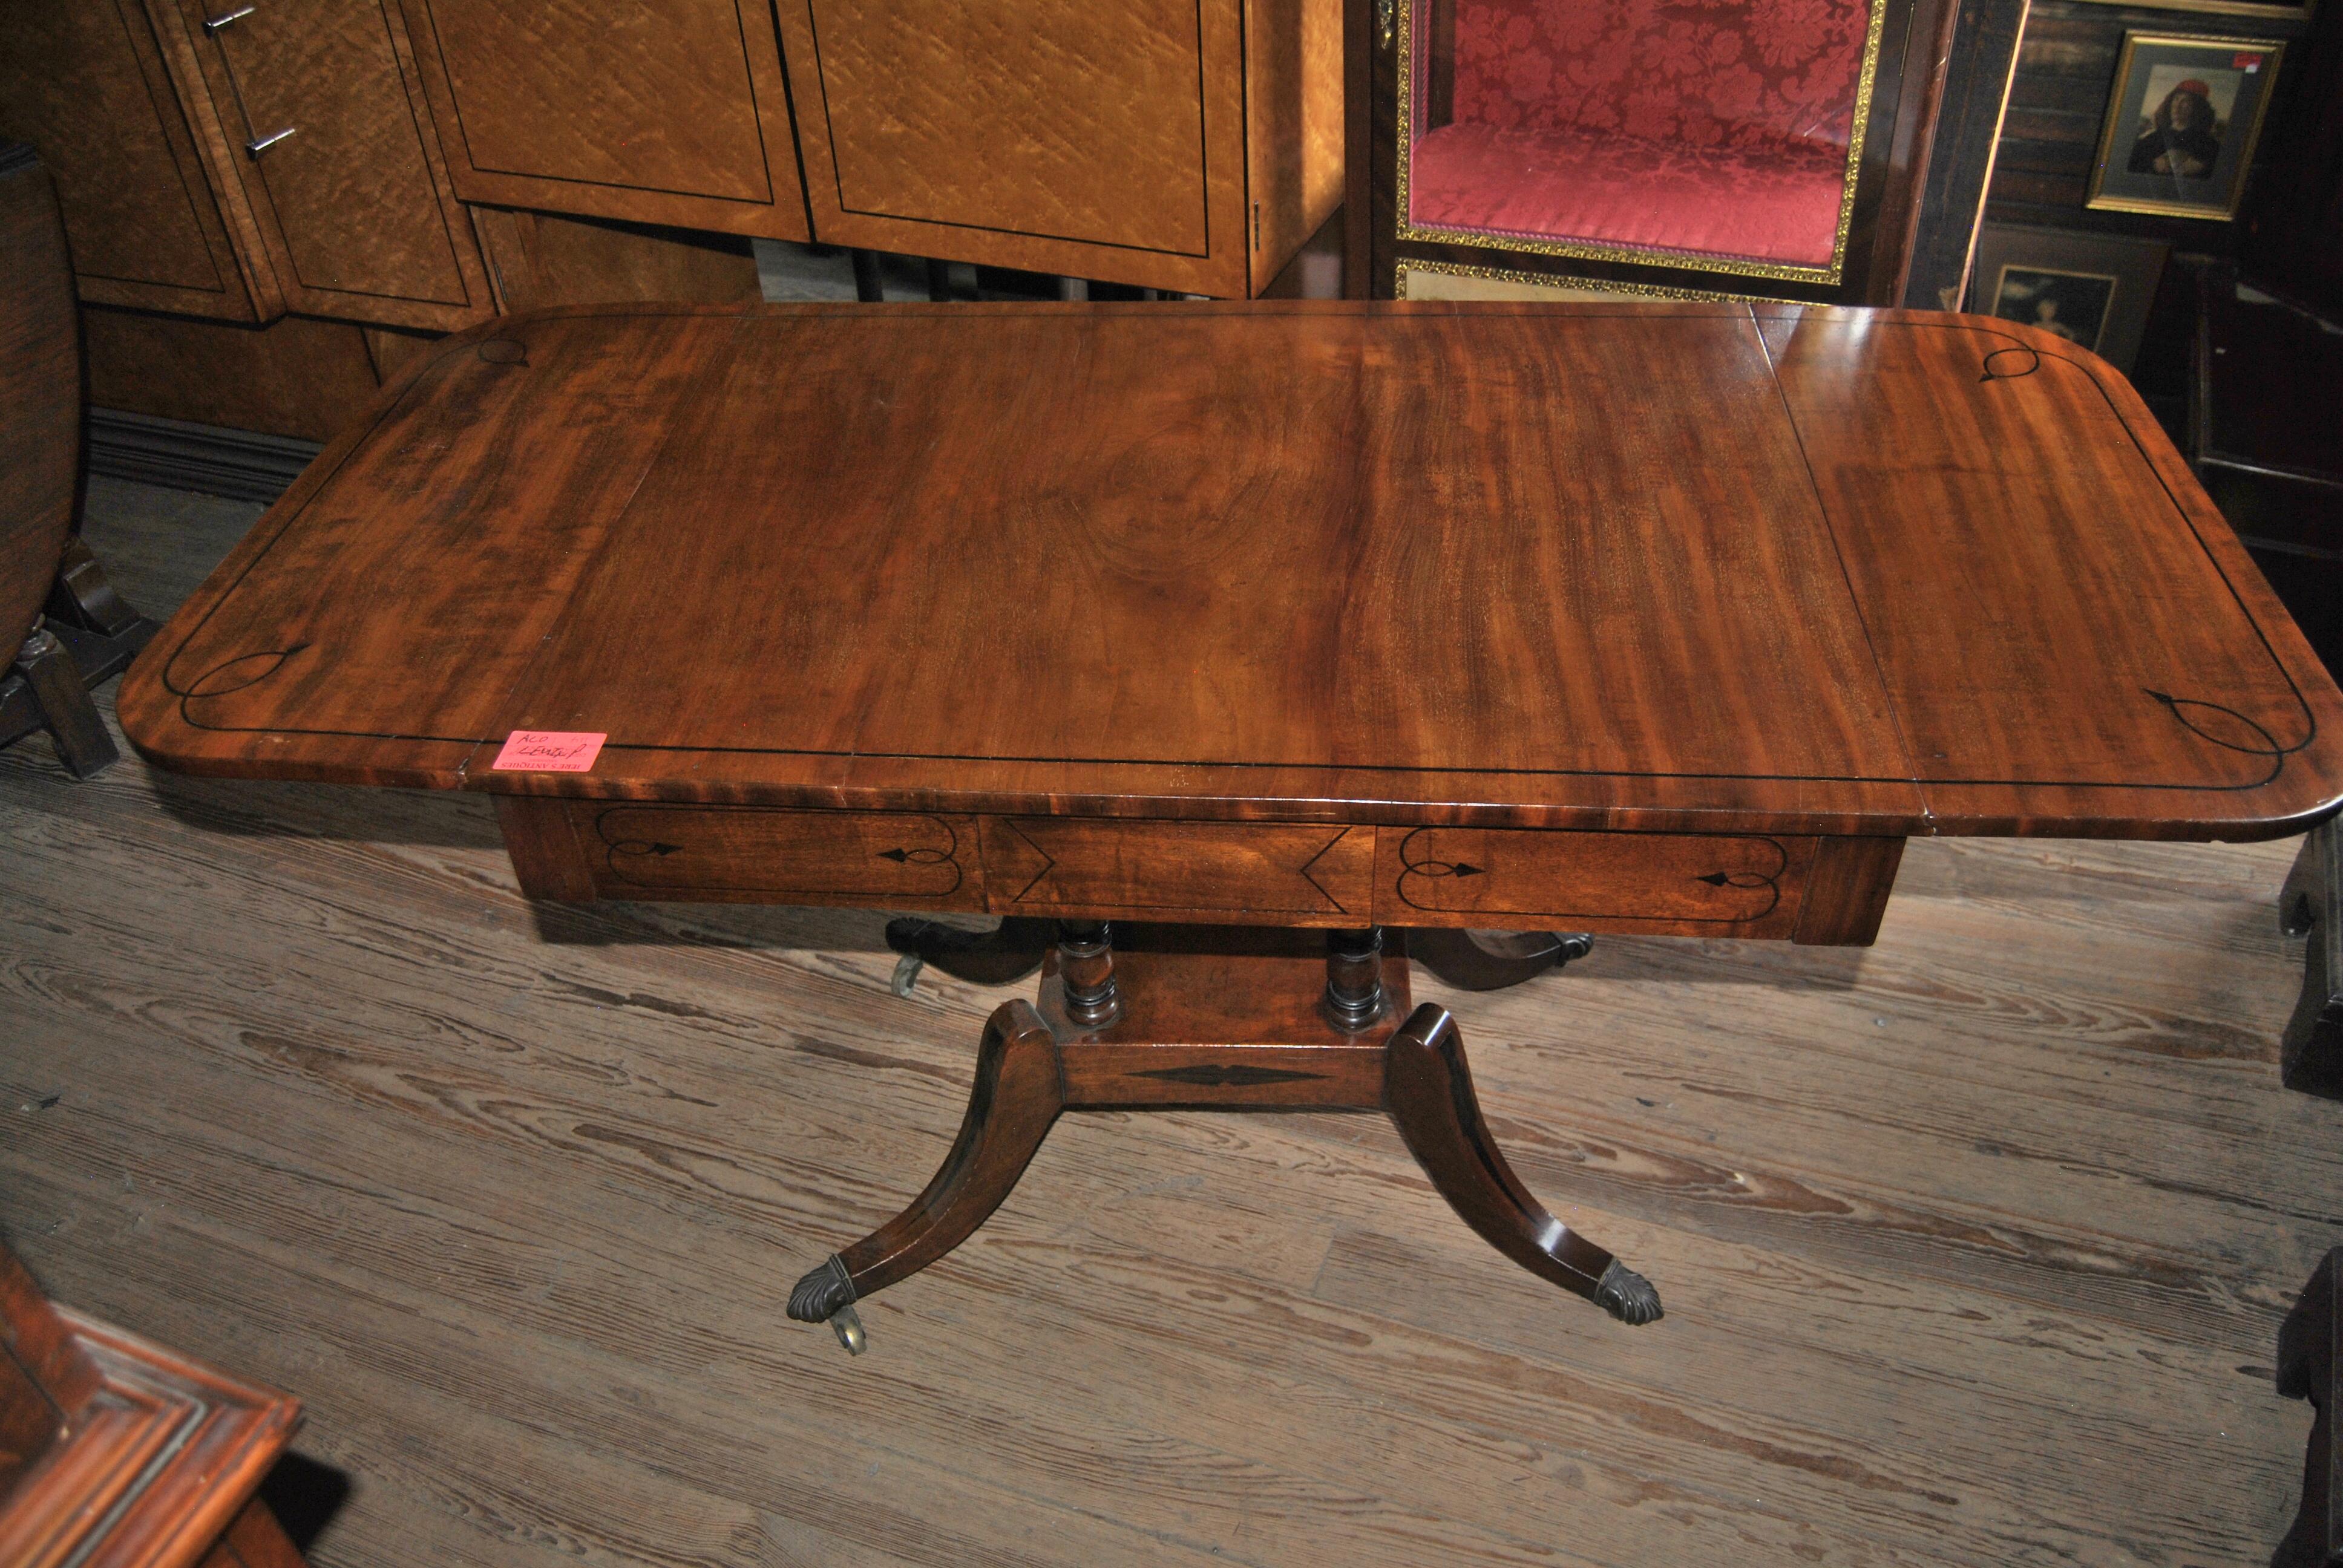 Dies ist ein massiver Mahagoni-Tisch mit Klappe, hergestellt in England um 1825. Die Platte, die beiden Blätter, die Ringdrechselungen an den Sockeln, der Sockel, die Zarge des Tisches und alle 4 Beine sind mit Ebenholz intarsiert. An der